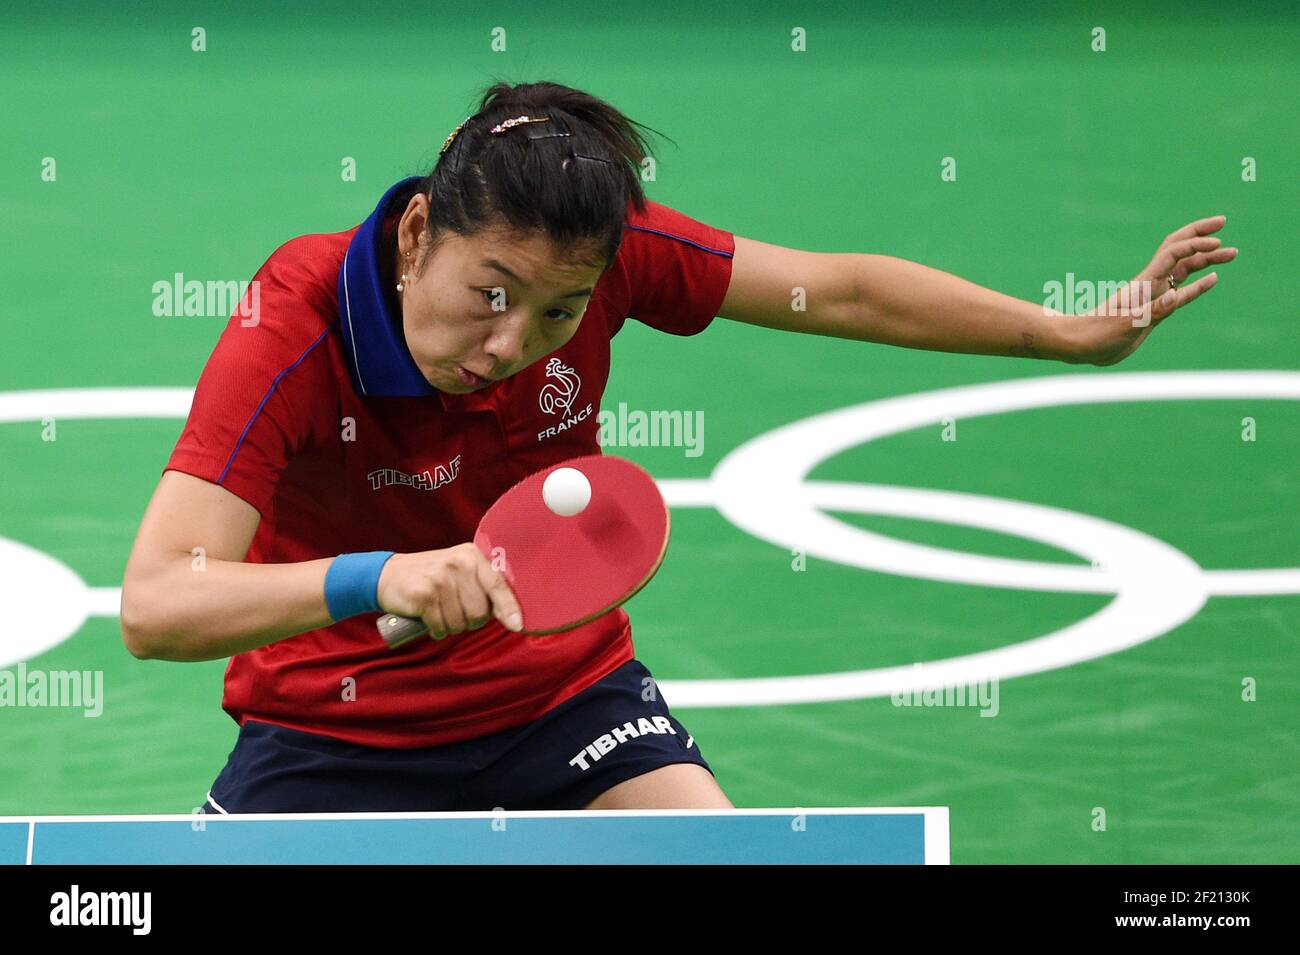 Xue Li en France participe aux Jeux Olympiques RIO 2016, tennis de table,  le 7 août 2016, à Rio, Brésil - photo Philippe Millereau / KMSP / DPPI  Photo Stock - Alamy